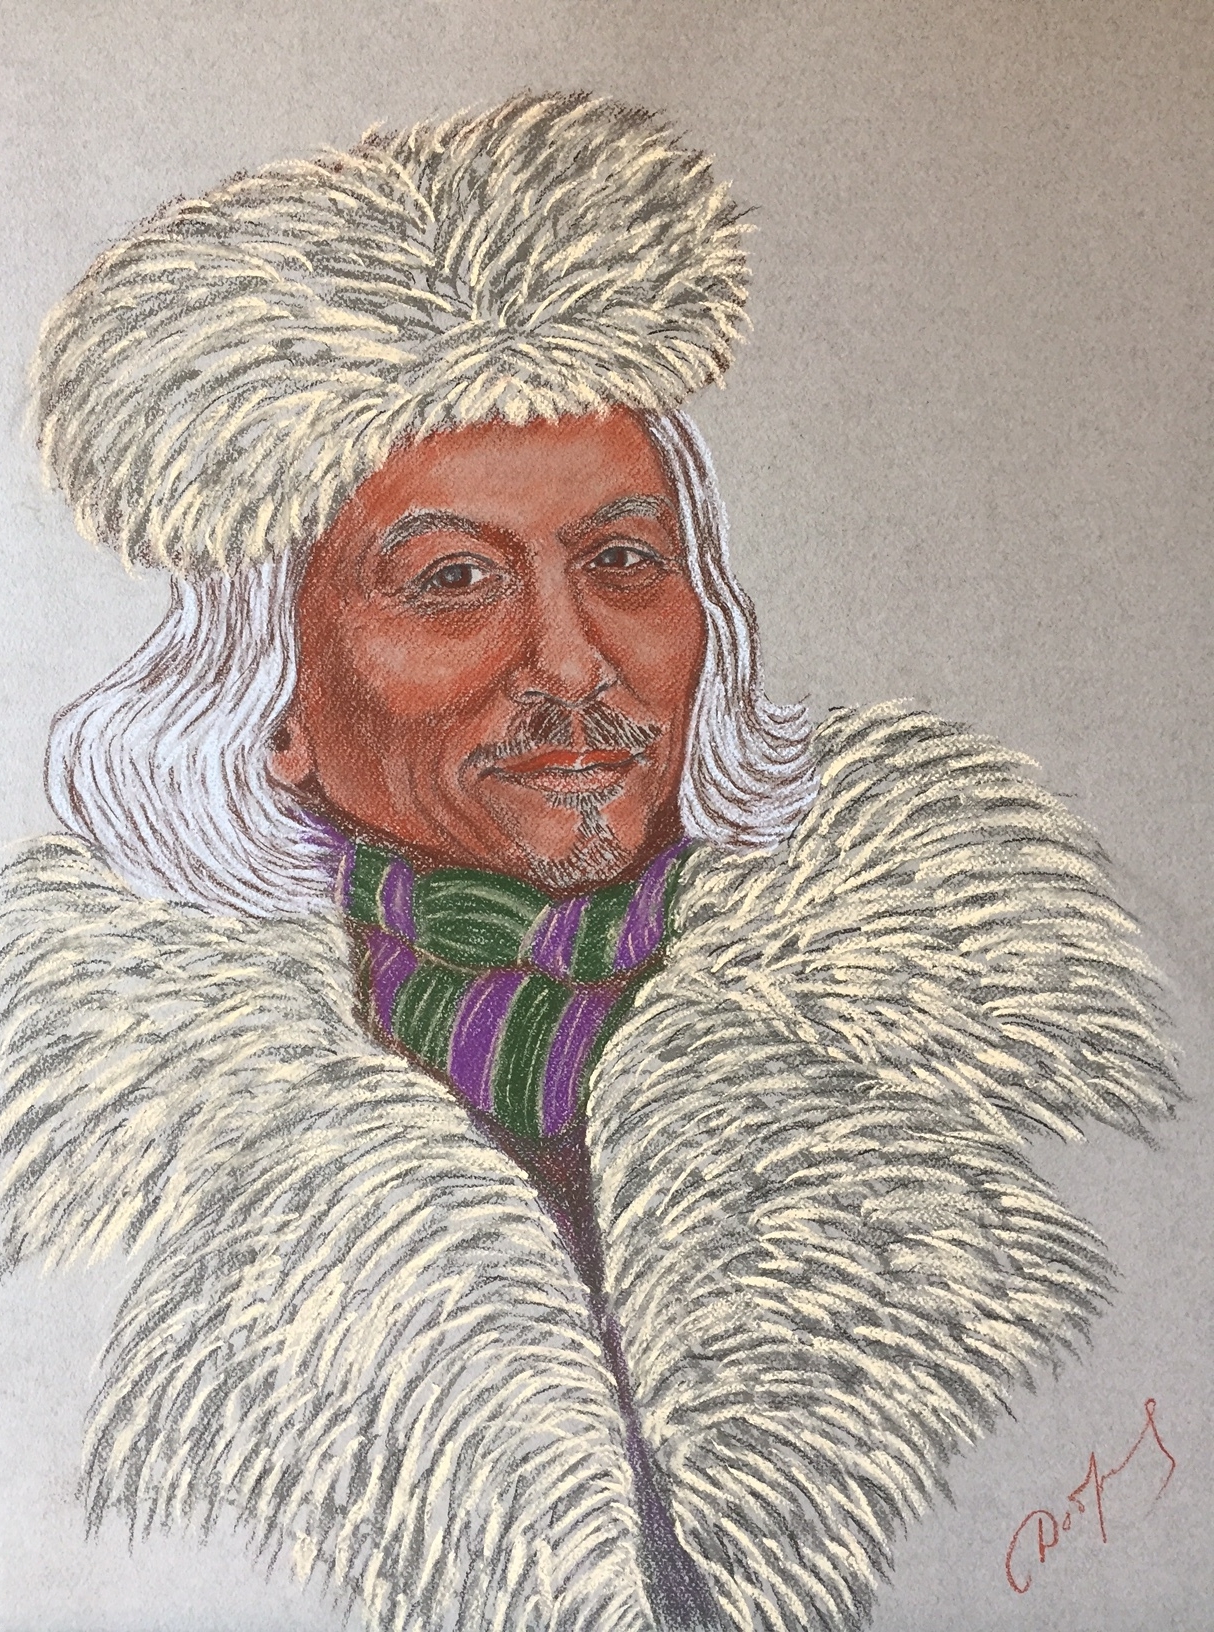 Portrait of Ole Jorgen Hammeken, famous Polar explorer